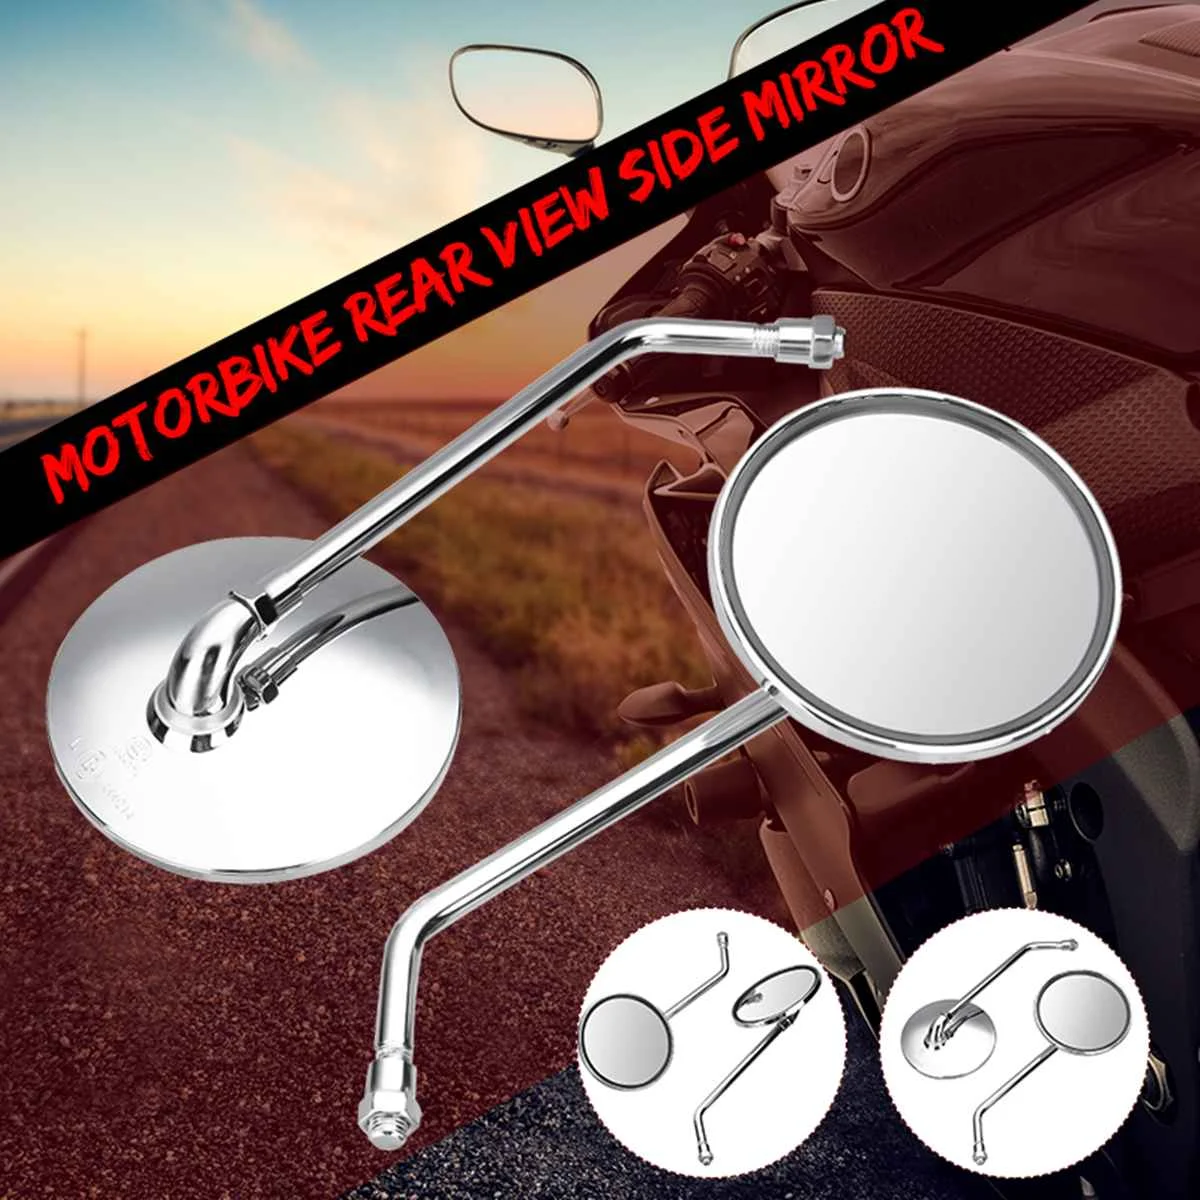 

22 мм (7/8 ") круглый мотоцикл боковые зеркала заднего вида зеркало заднего вида Ретро Солнечные для Harley Davidson Sportster Ryca двигатели зеркала заднего вида